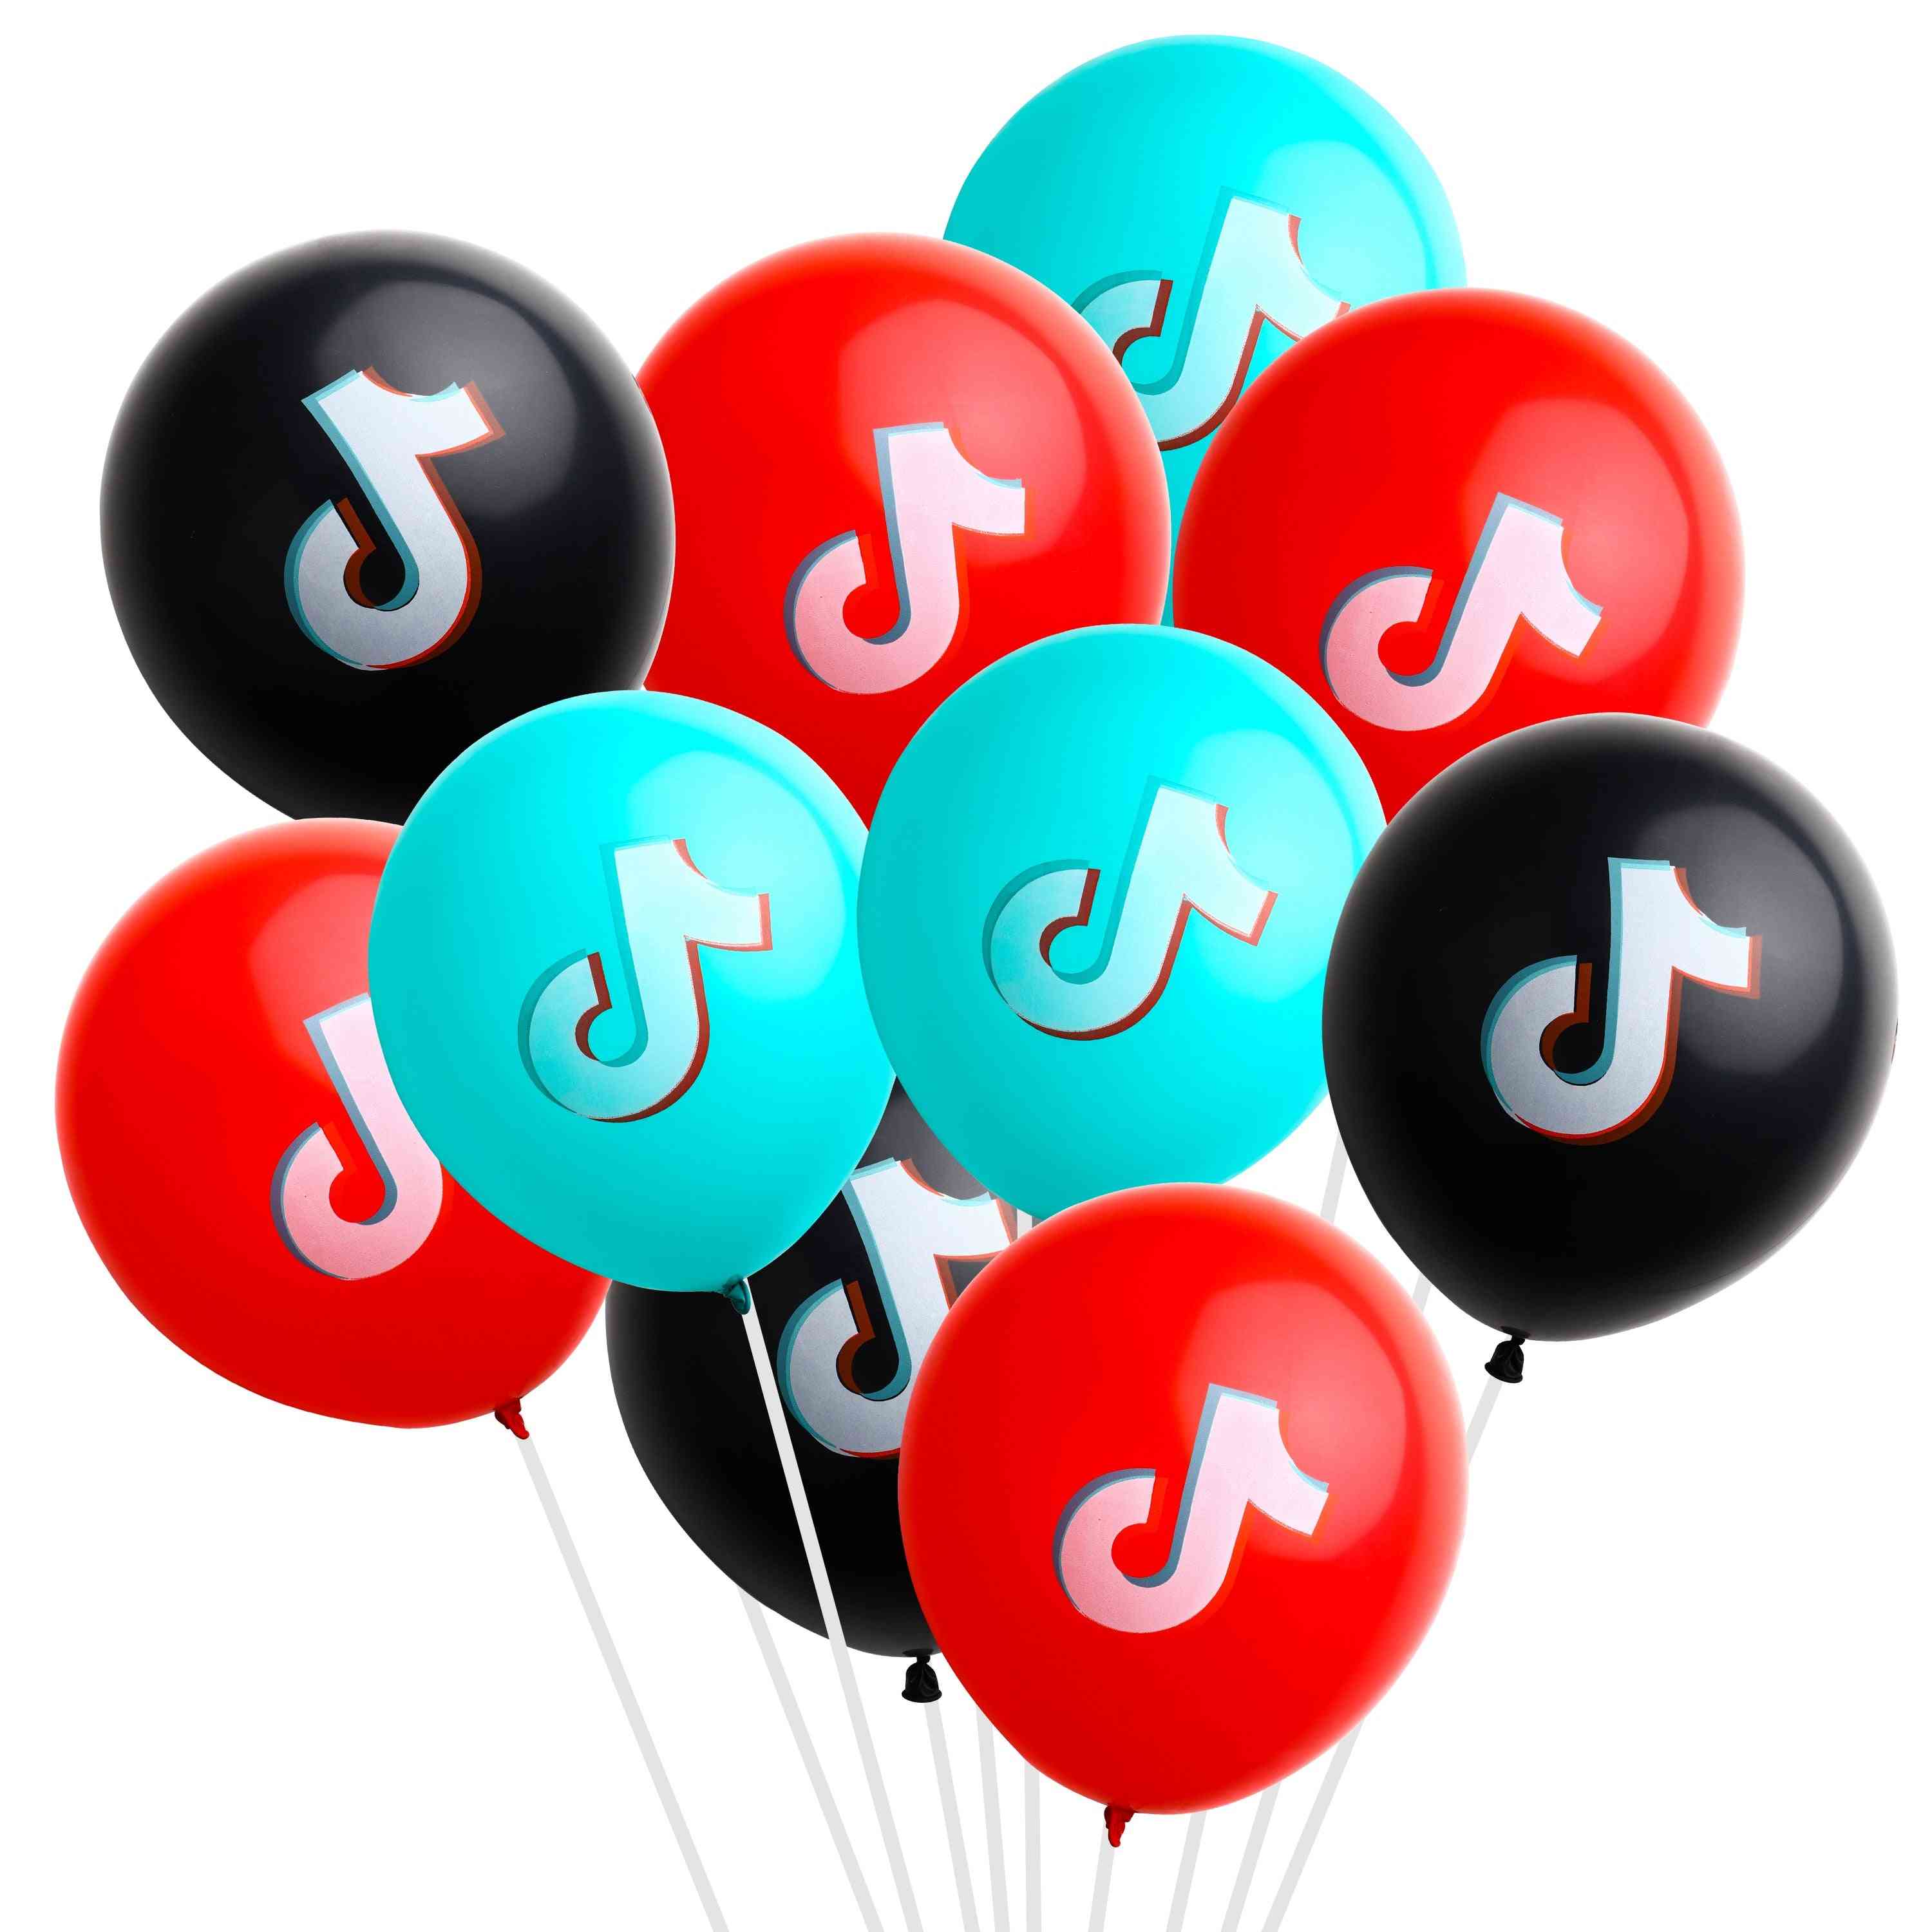 Tik Tok Theme Balloon For Birthday Party Decoration